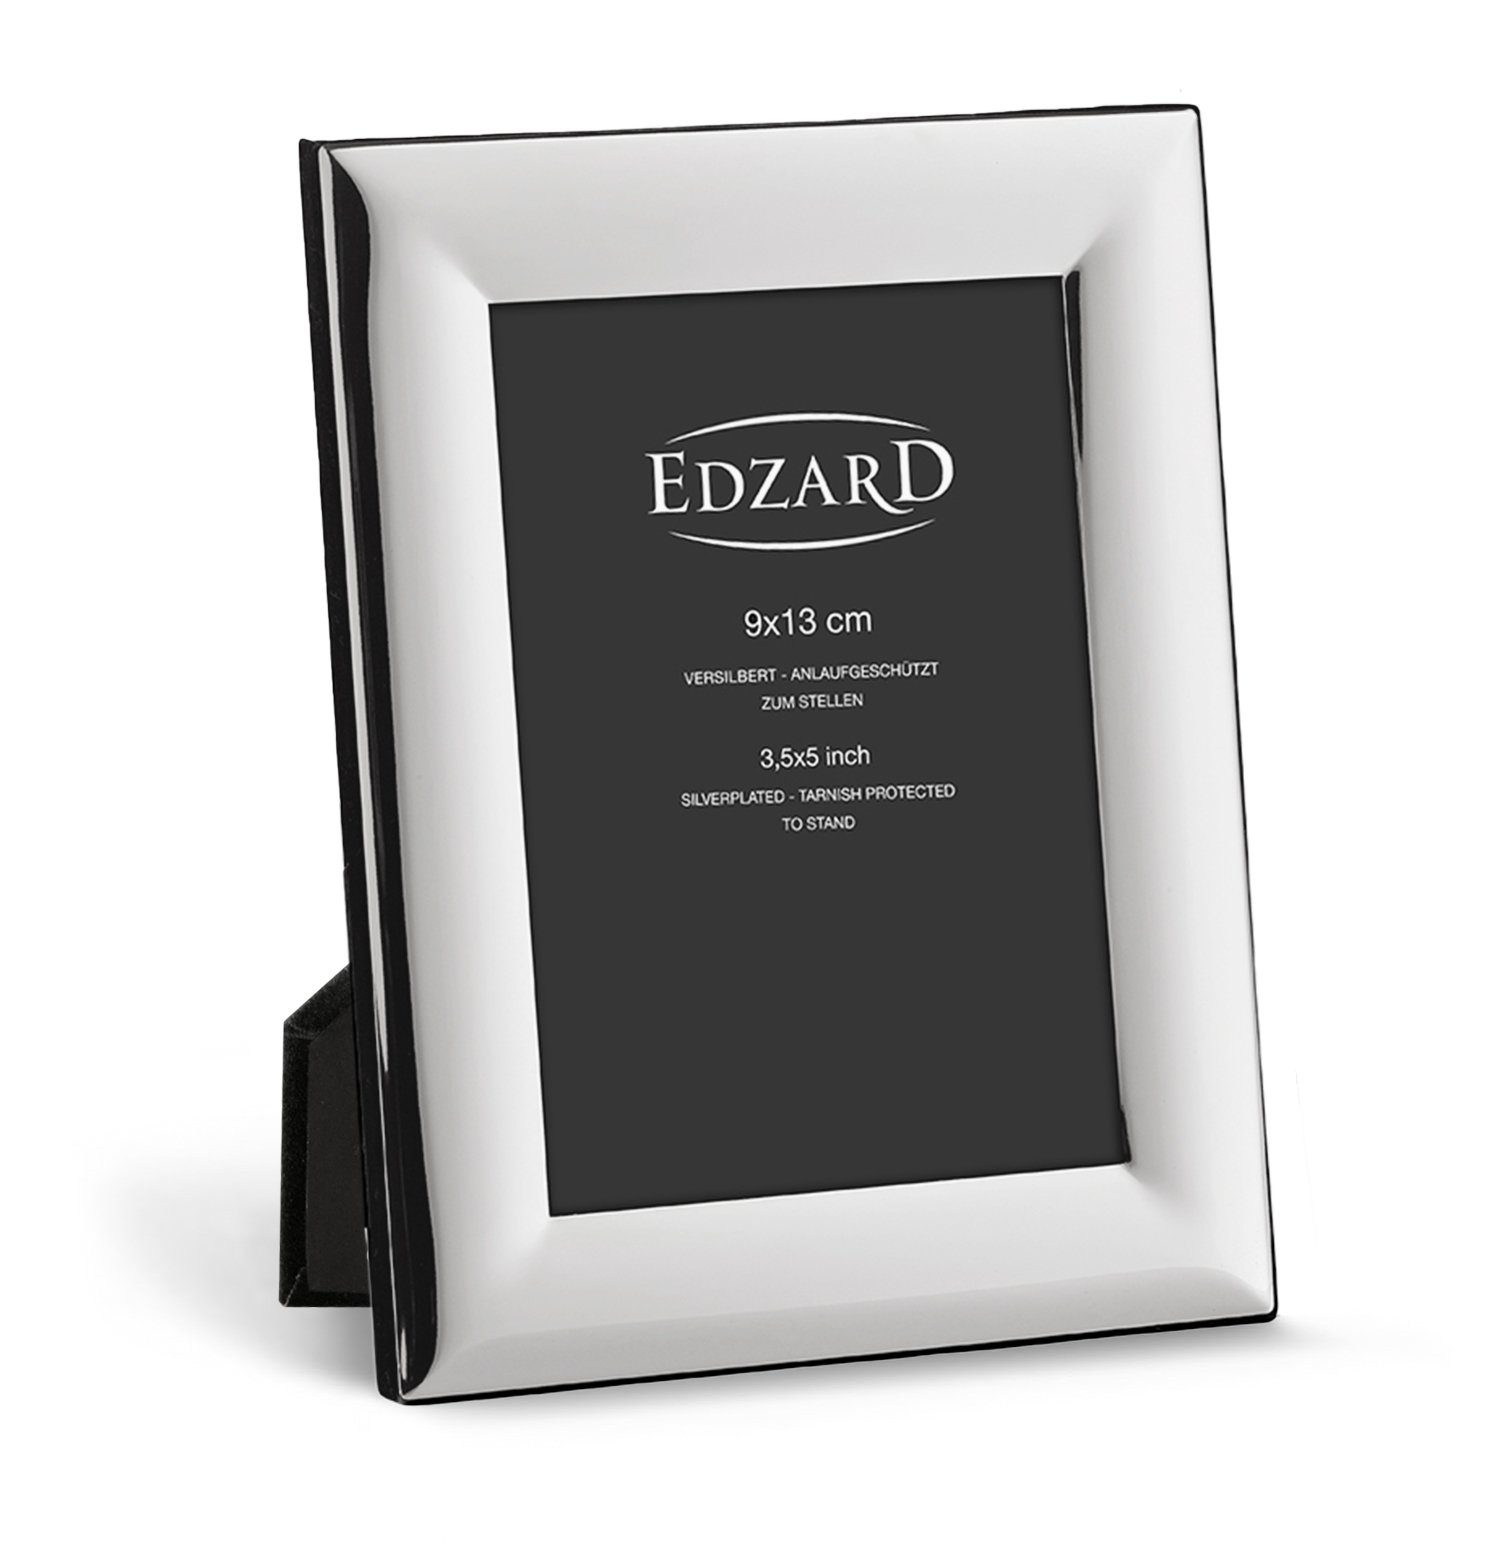 EDZARD Bilderrahmen Gela, versilbert und 9x13 Foto cm für anlaufgeschützt